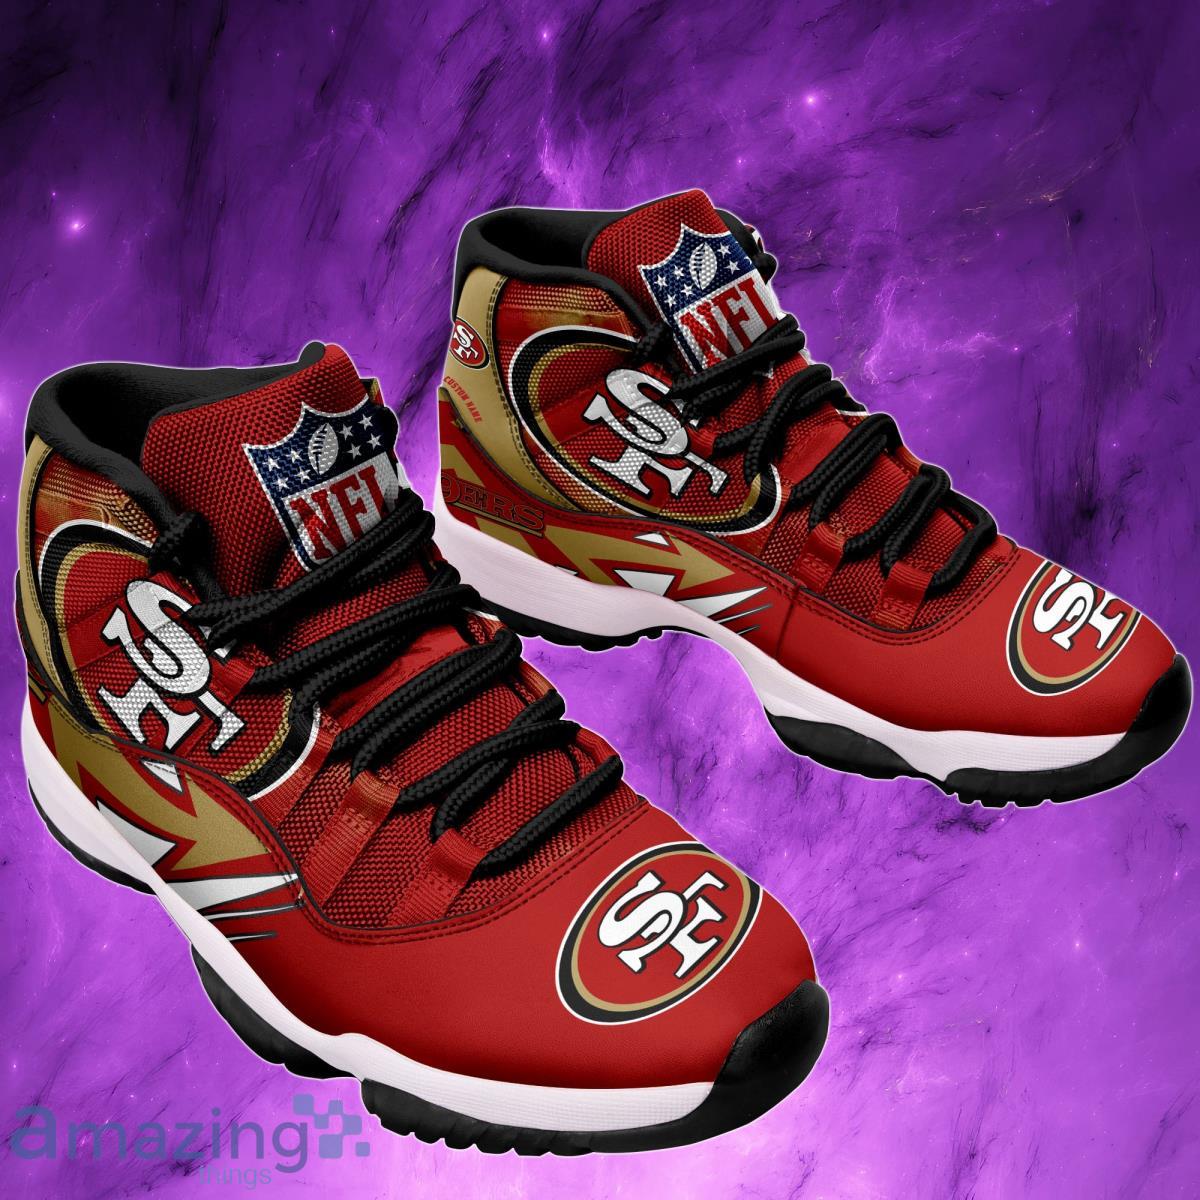 San Francisco 49ers Custom Name Air Jordan 11 Sneaker Shoes For Sport Fans  - Banantees